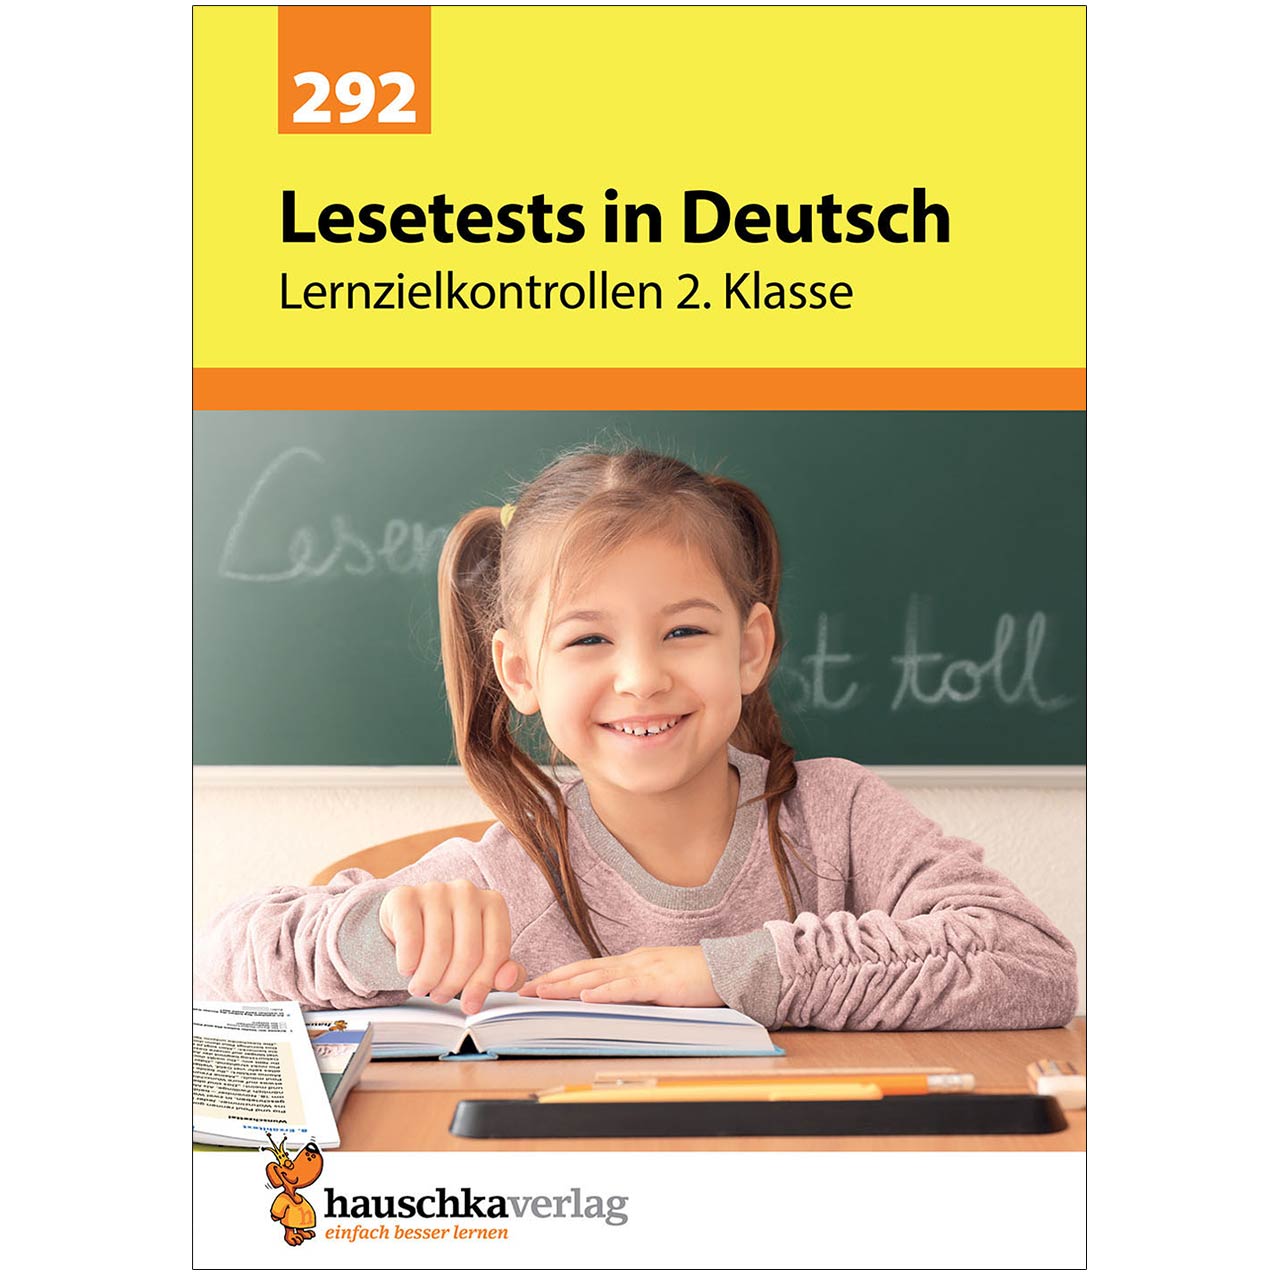 Lesetests in Deutsch – Lernzielkontrollen 2. Klasse